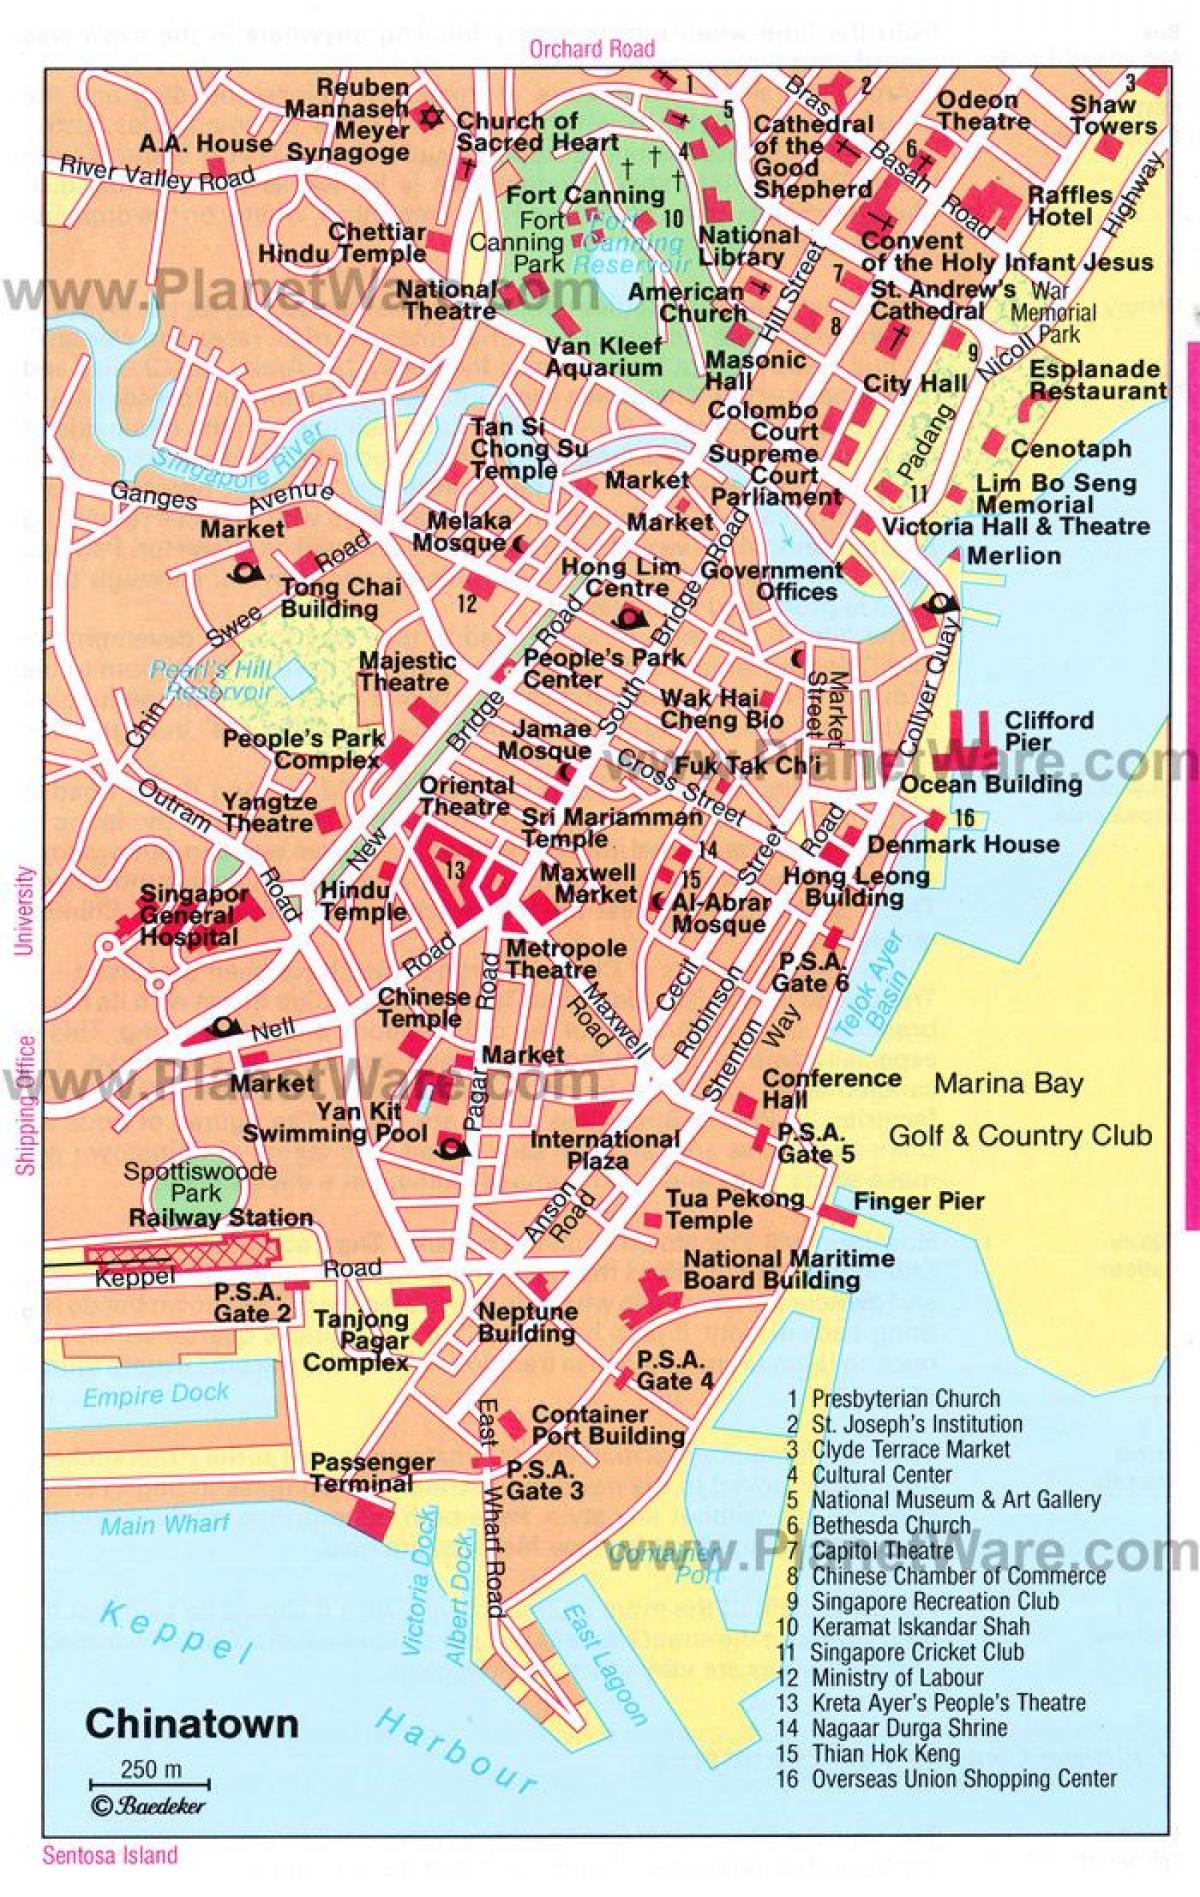 chinatown, Singapore arată hartă